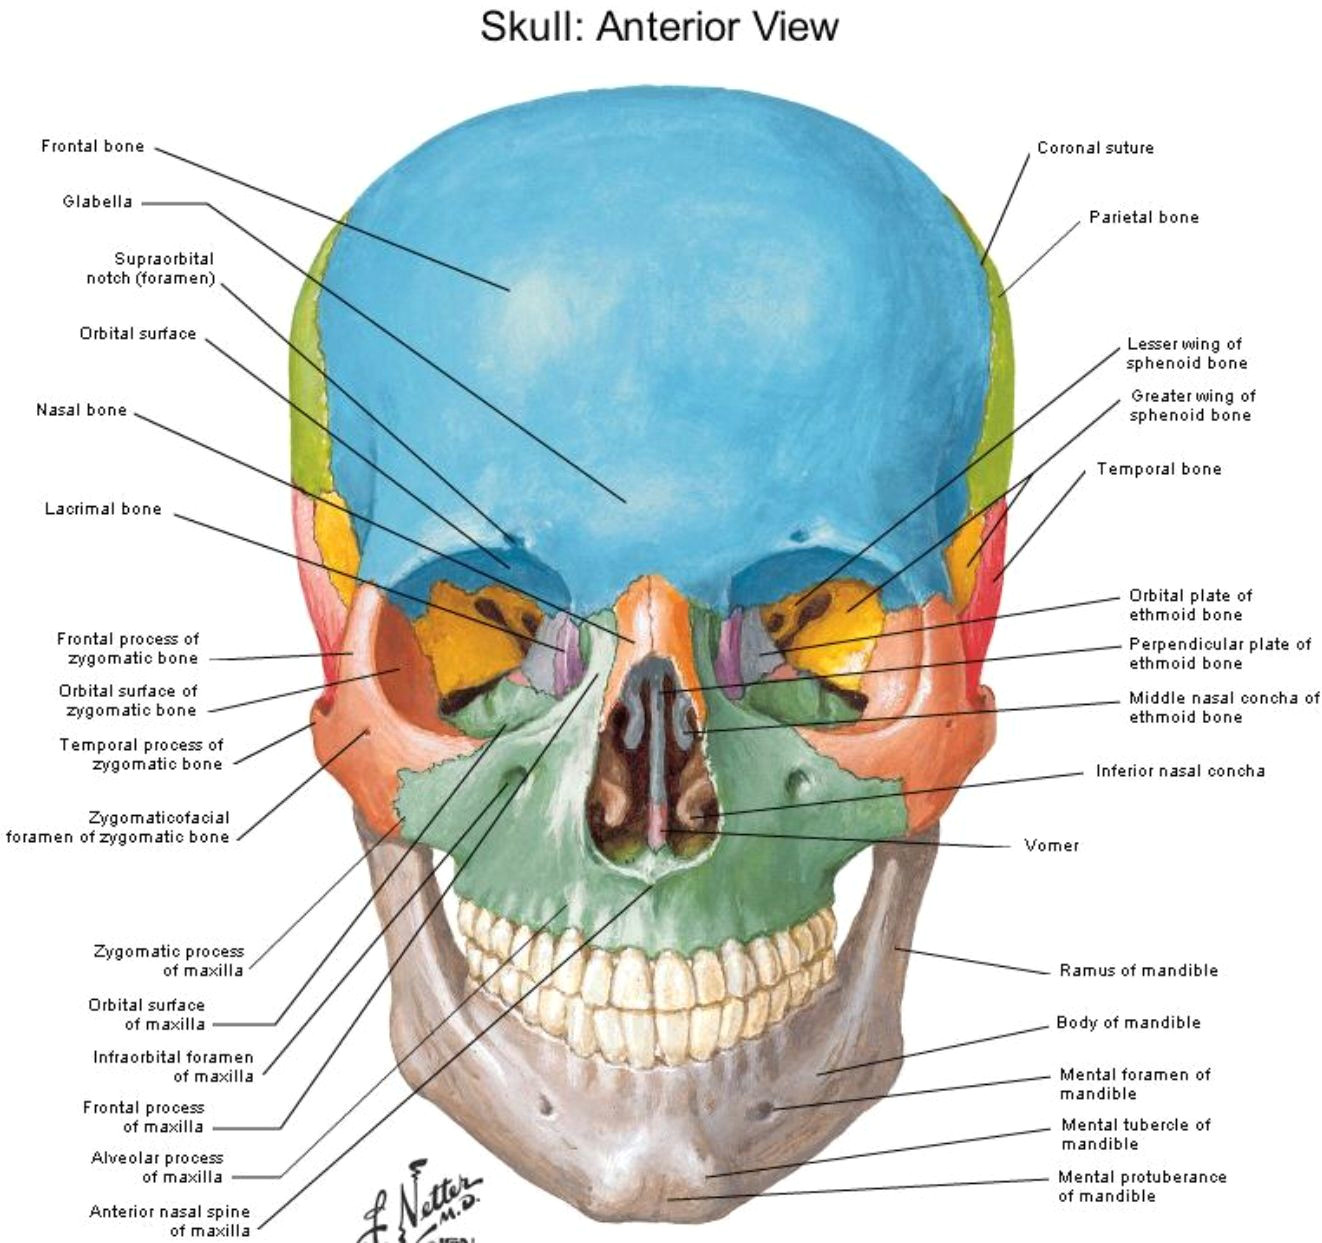 Skull Drawing Front View Anterior View Skull Netter Anatomy Pinterest Anatomy Skull